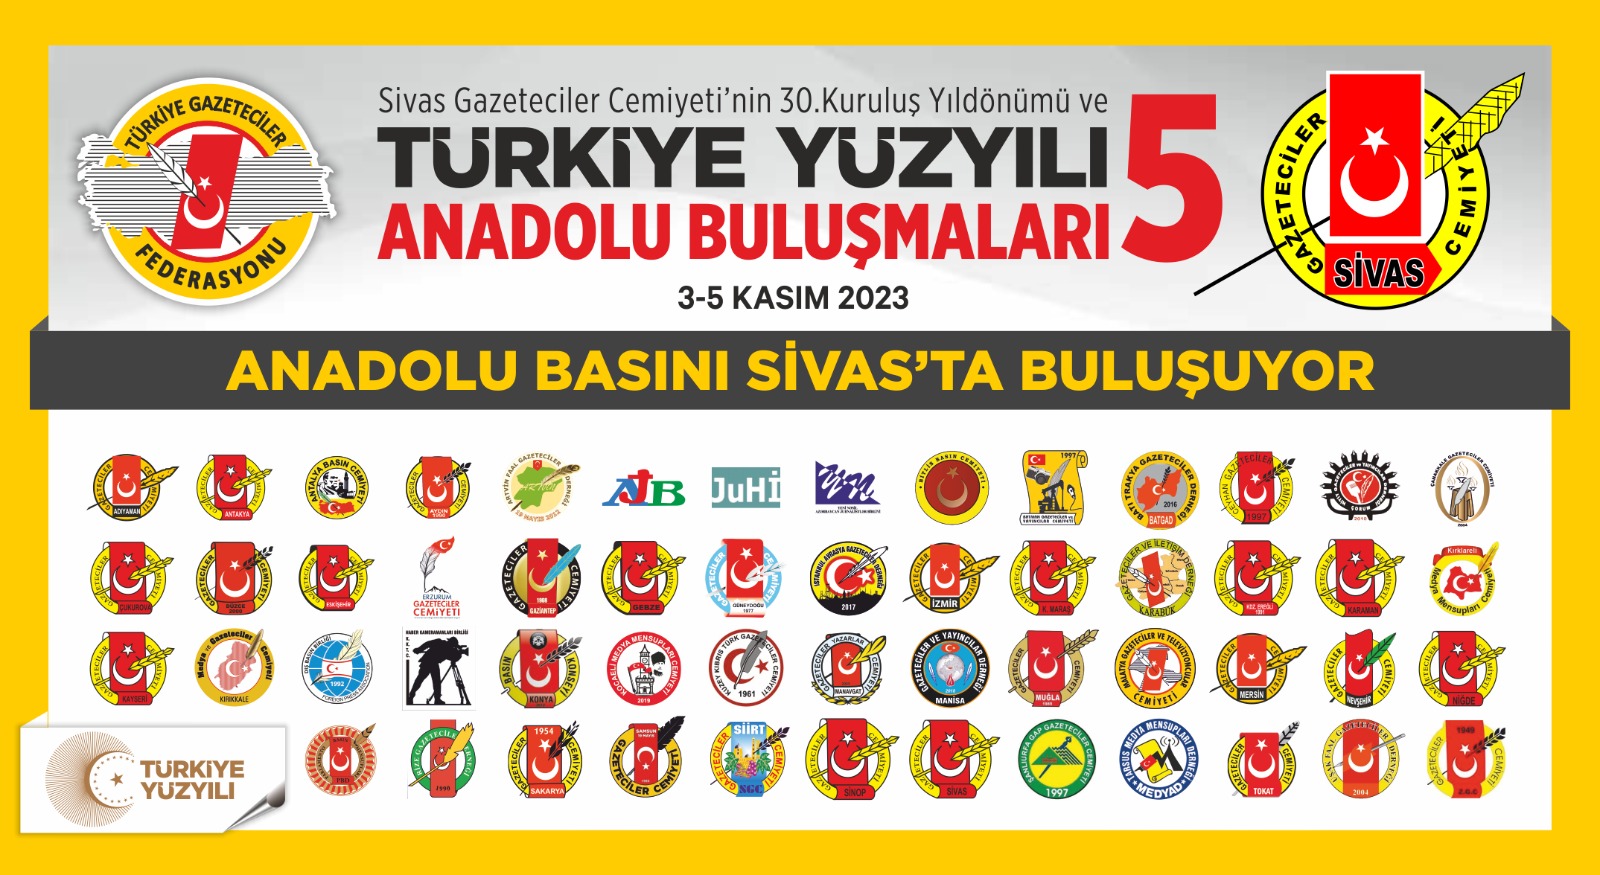 Türkiye Gazeteciler Federasyonu Başkanlar konseyi 03-05 Kasım tarihleri arasında Cumhuriyetin ilan edildiği Sivas’ta yapılacak